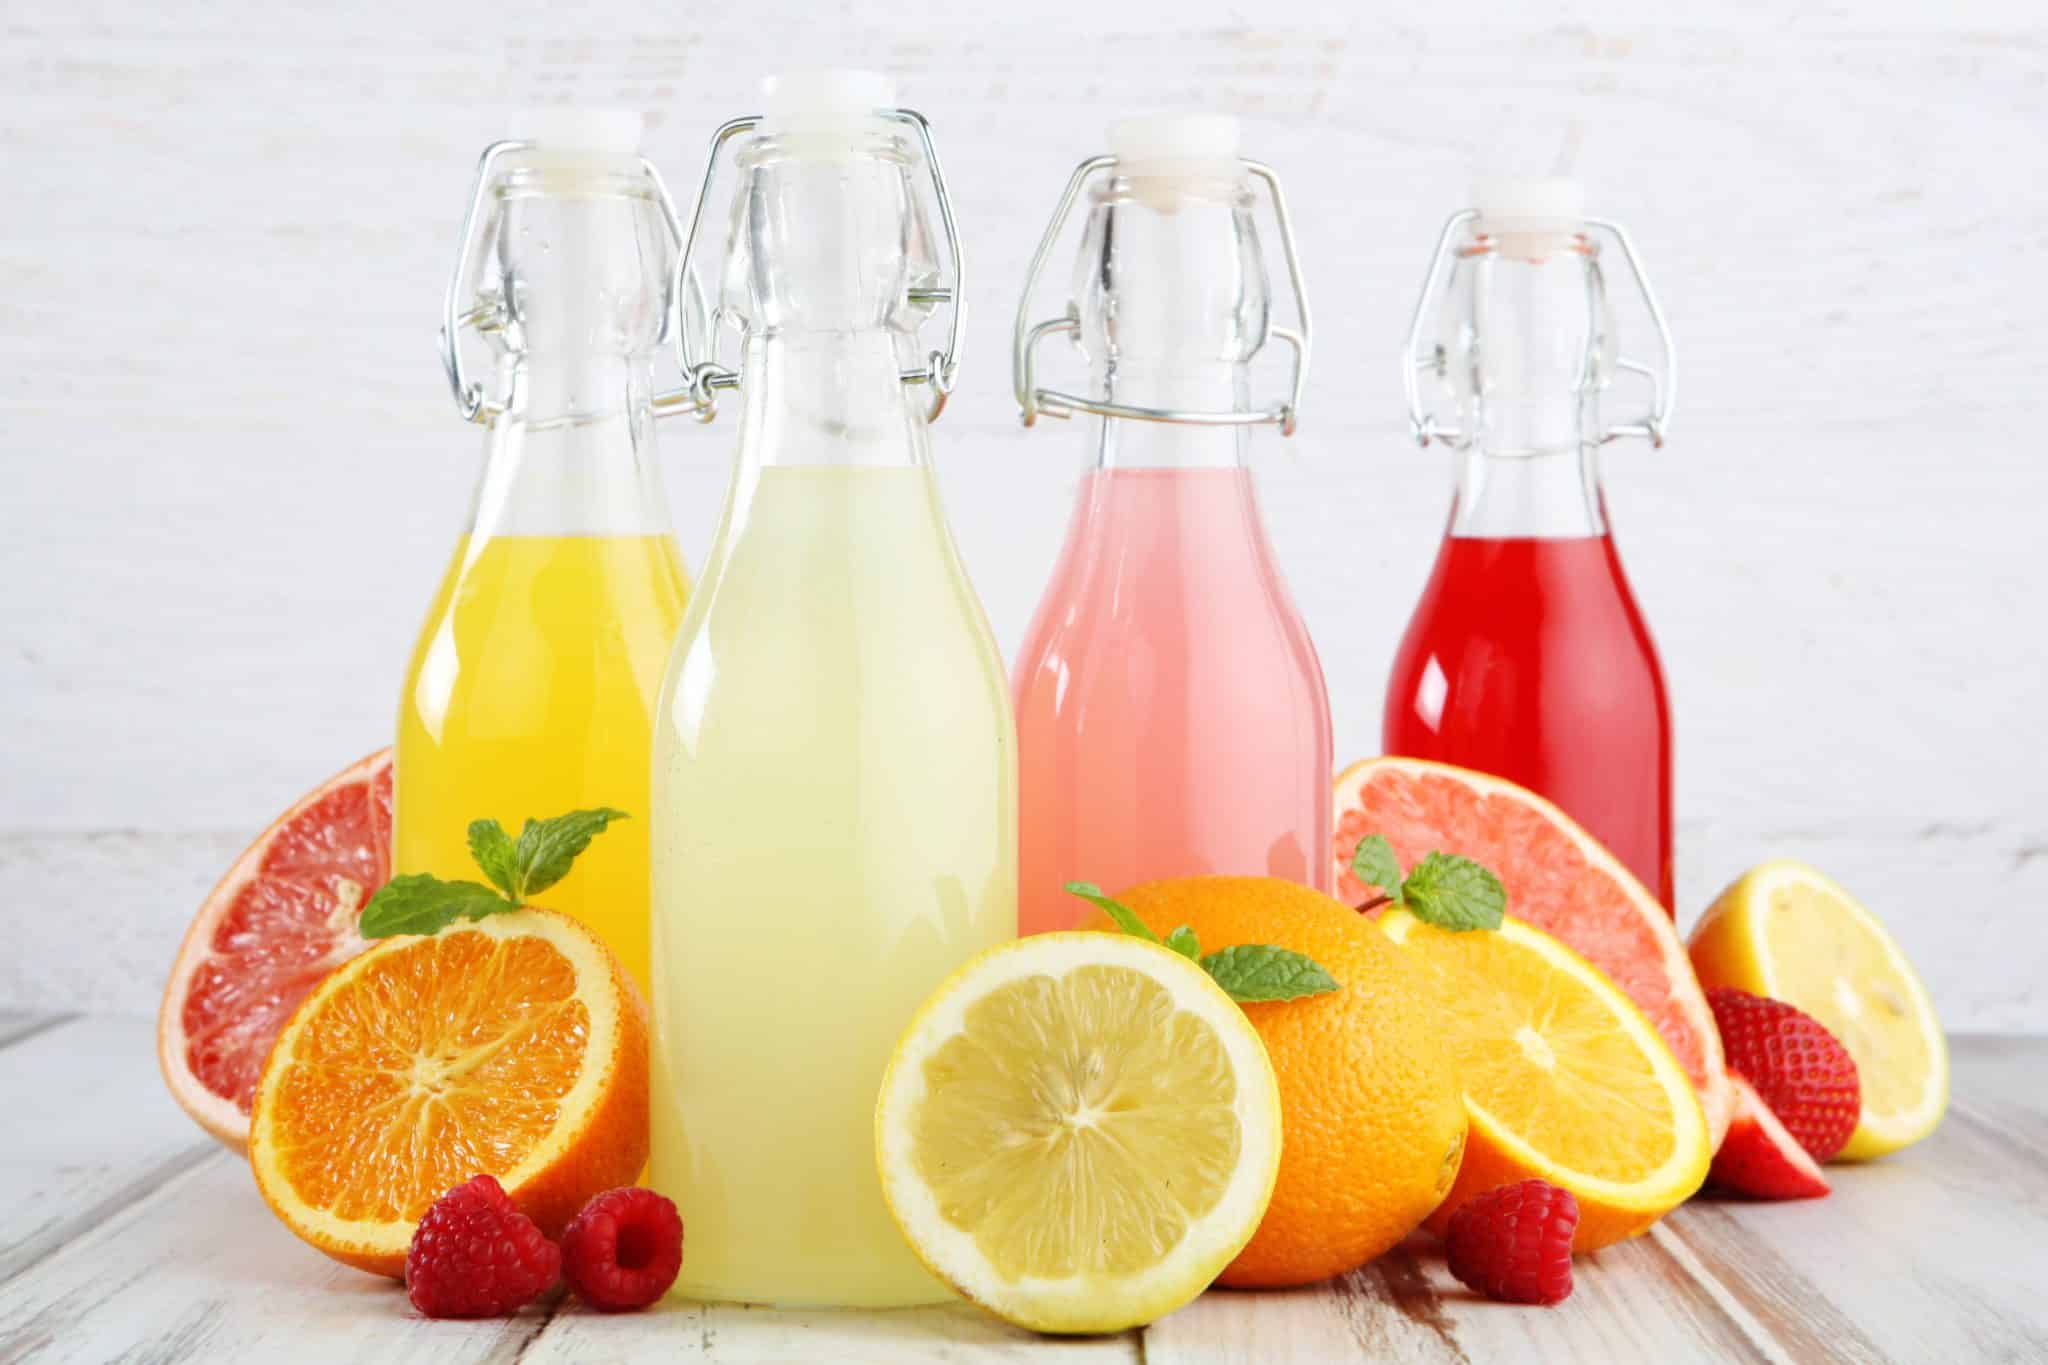 Verschiedenfarbige, säurehaltige Getränke in Flaschen und säurehaltige Früchte wie Zitrone, Orange, Grapefruit sind zu sehen.